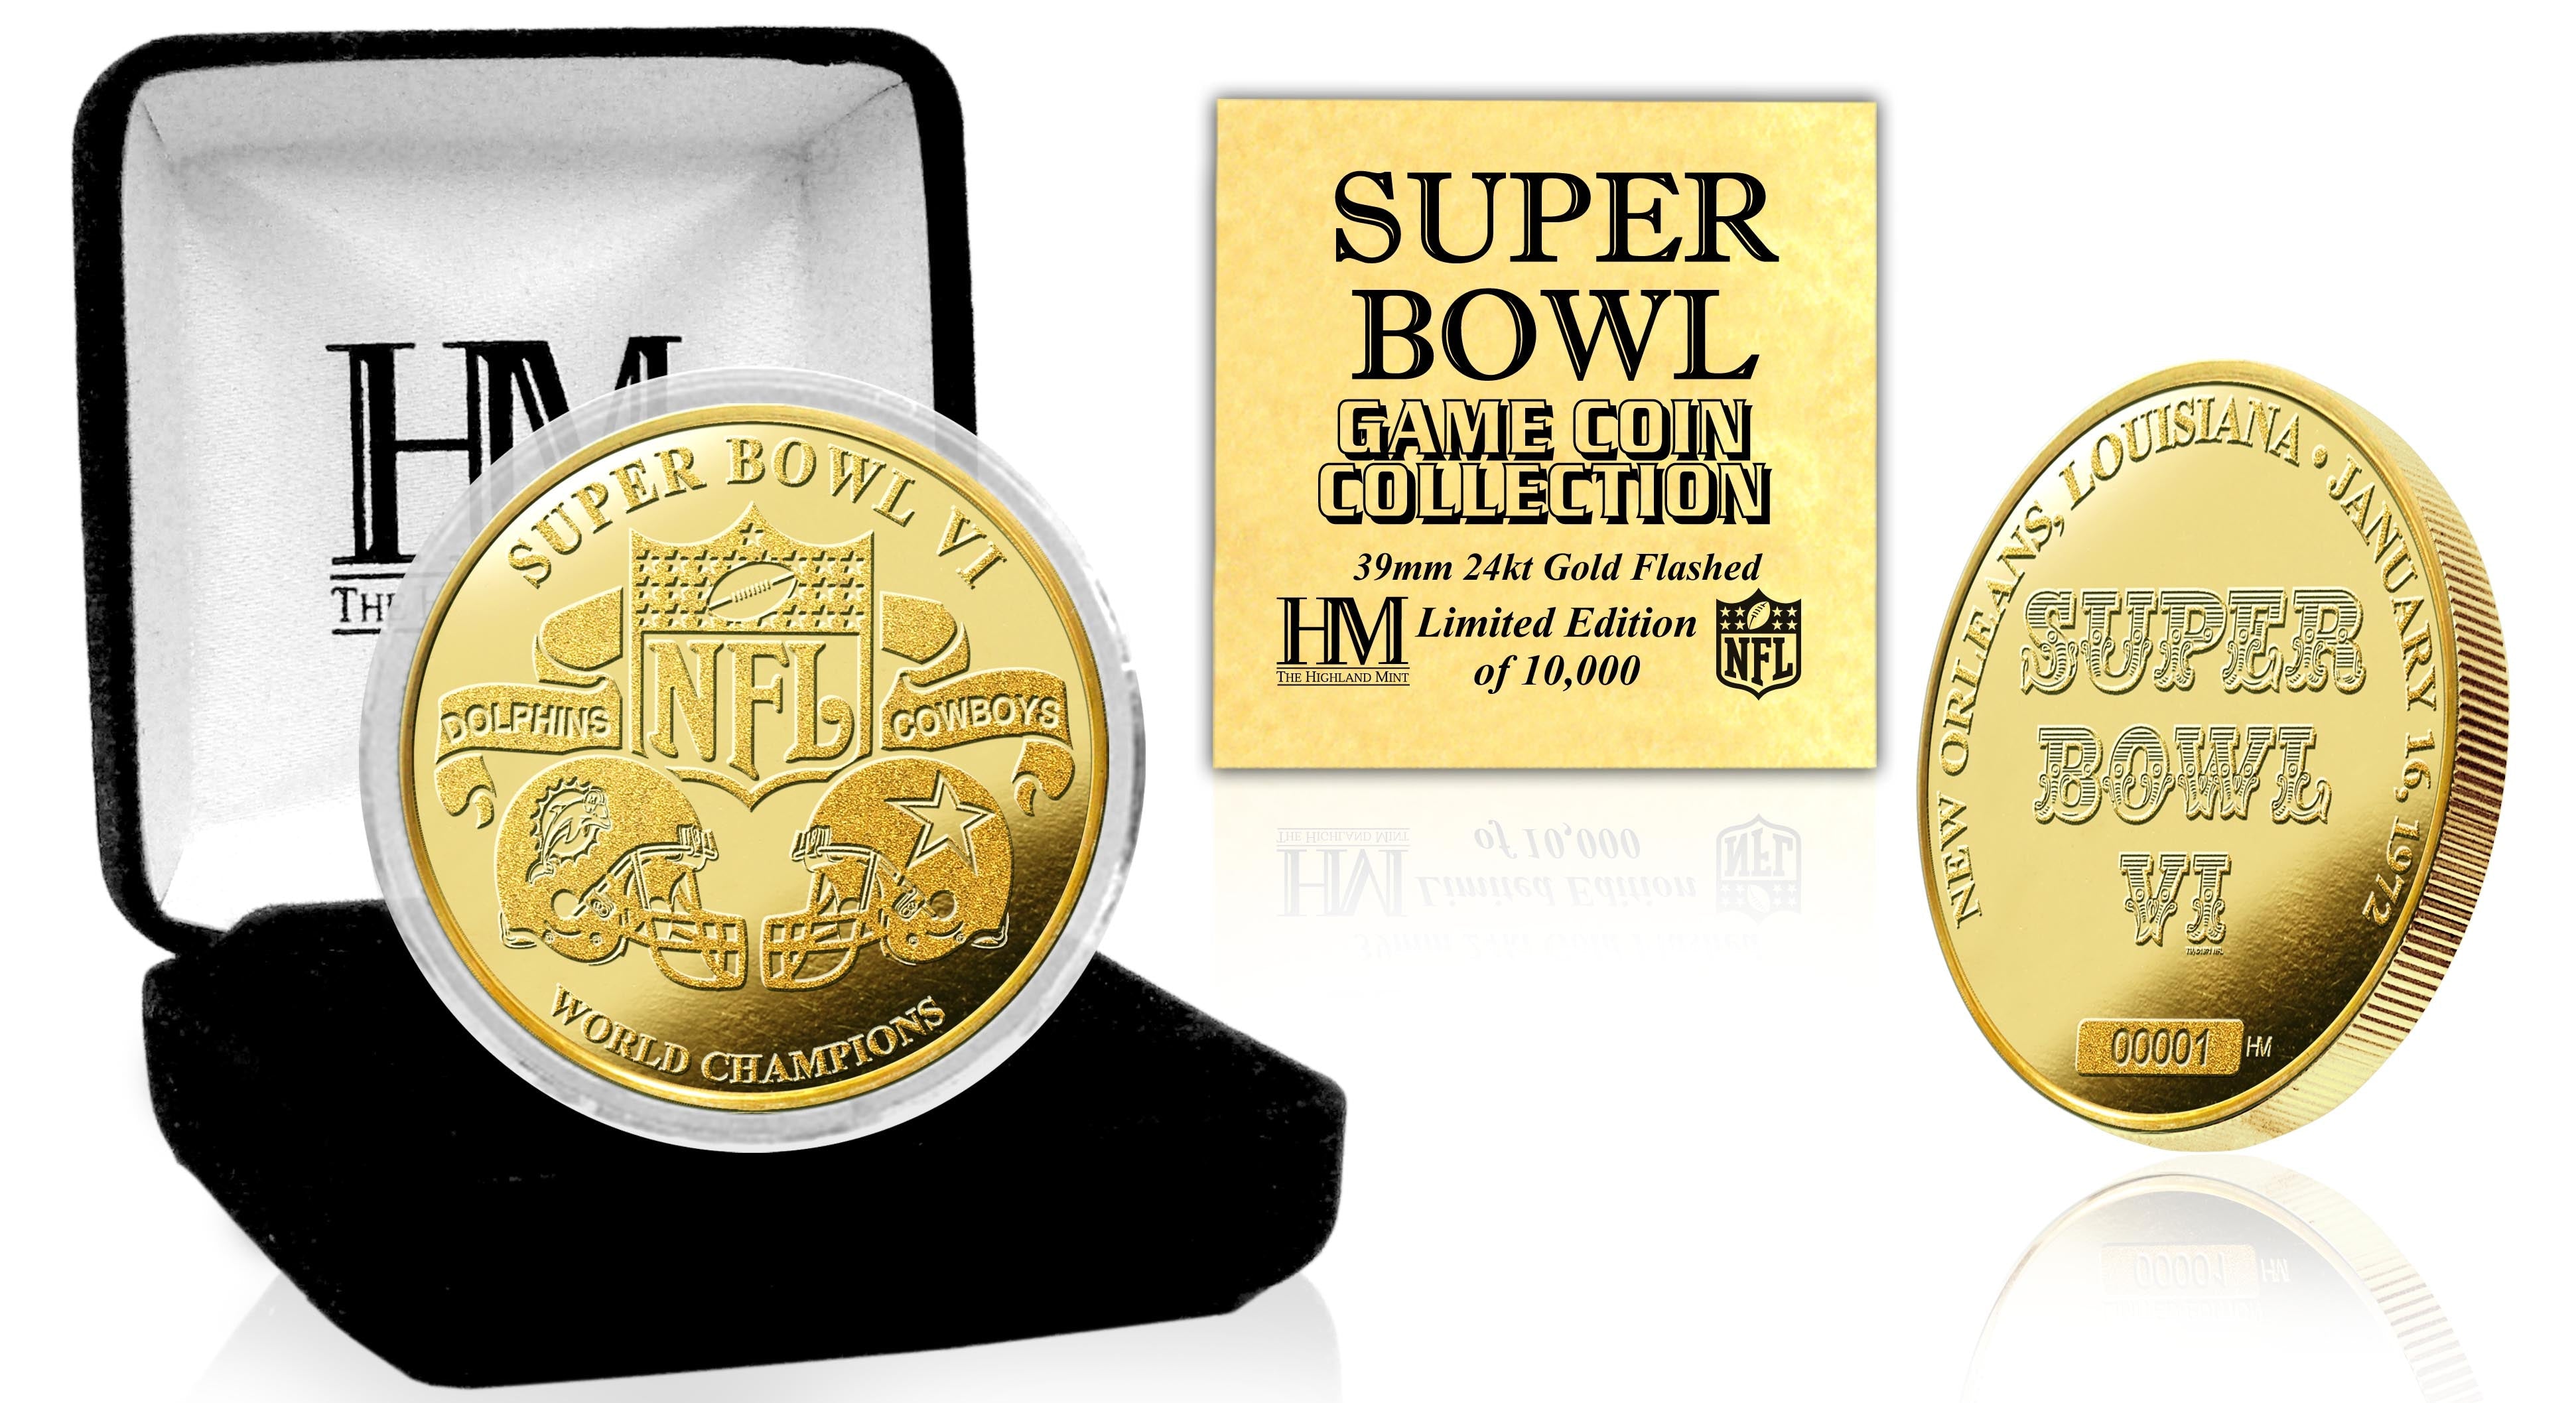 Super Bowl VI 24kt Gold Flip Coin